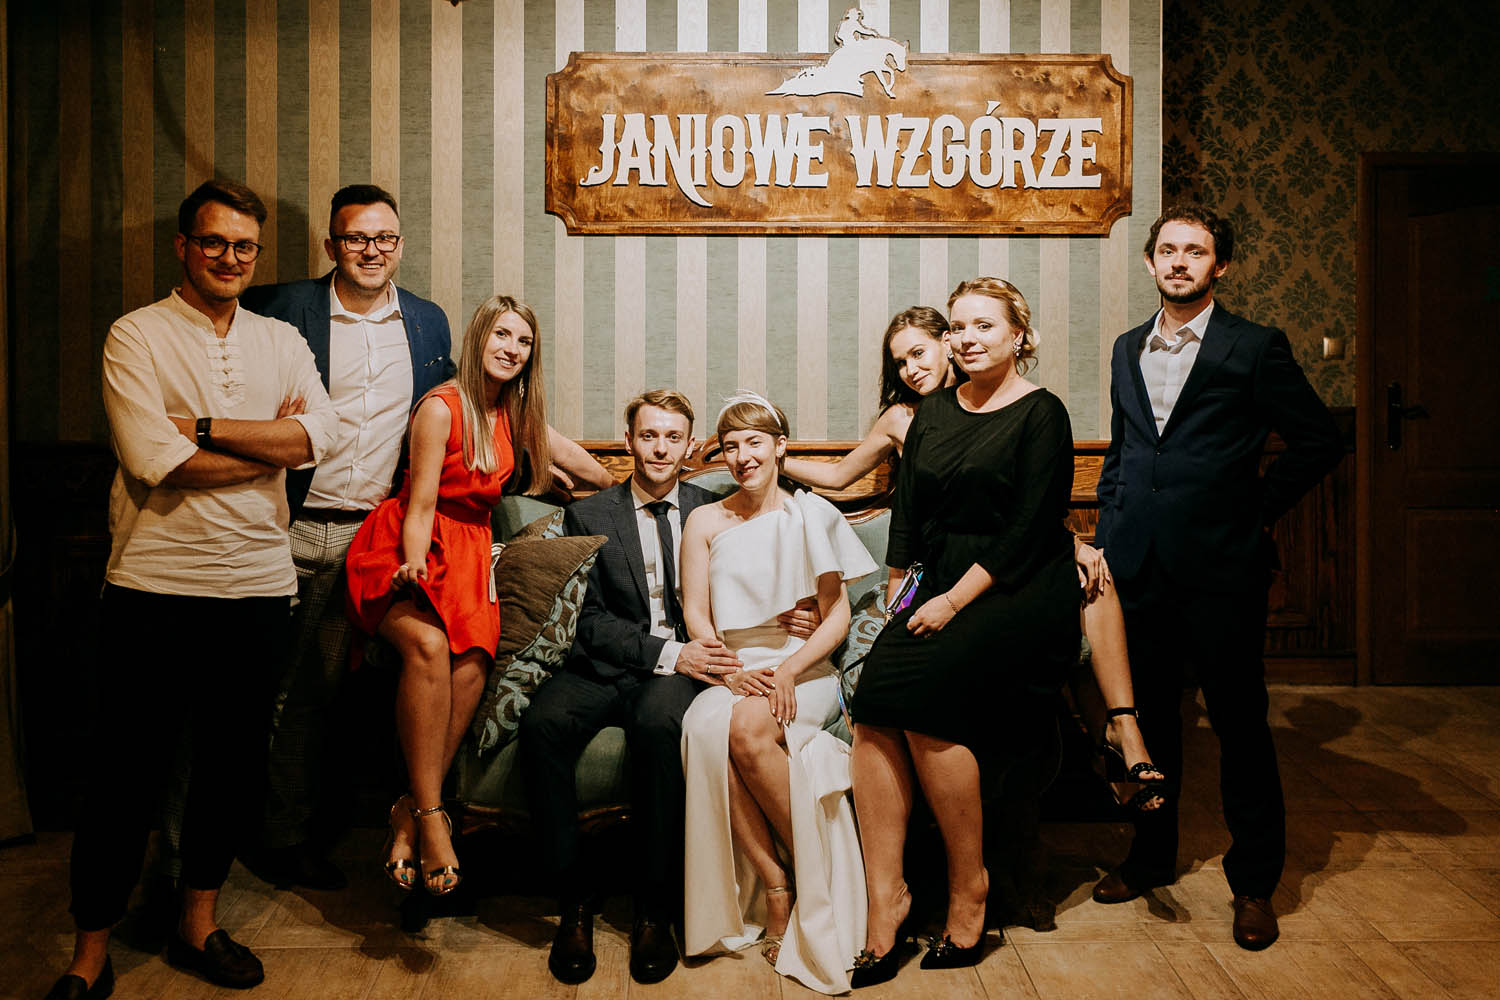 wesele na ranczo janiowe wzgórze, fotografia slubna w krakowie, www.jakubdziedzic.pl